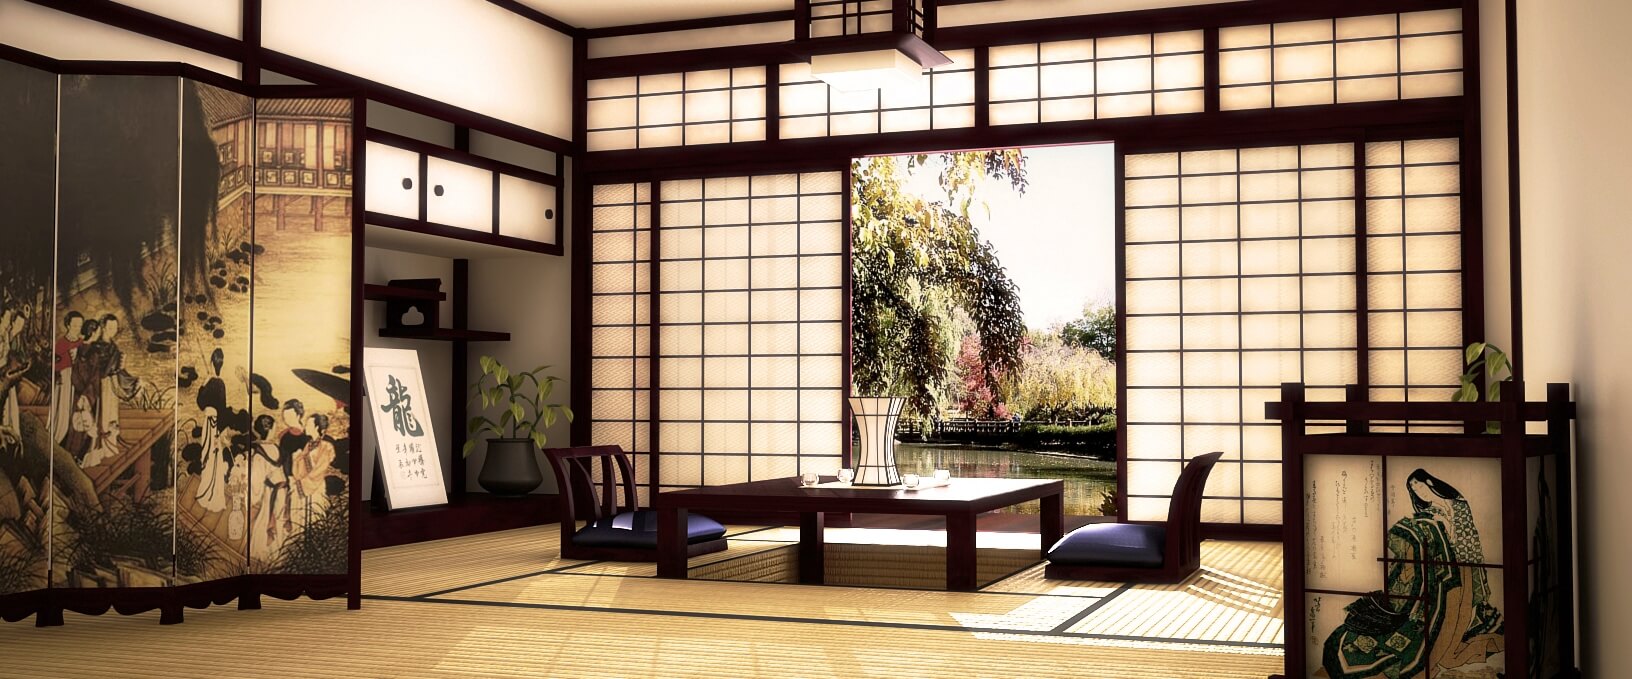 Интерьер и дизайн в японском стиле